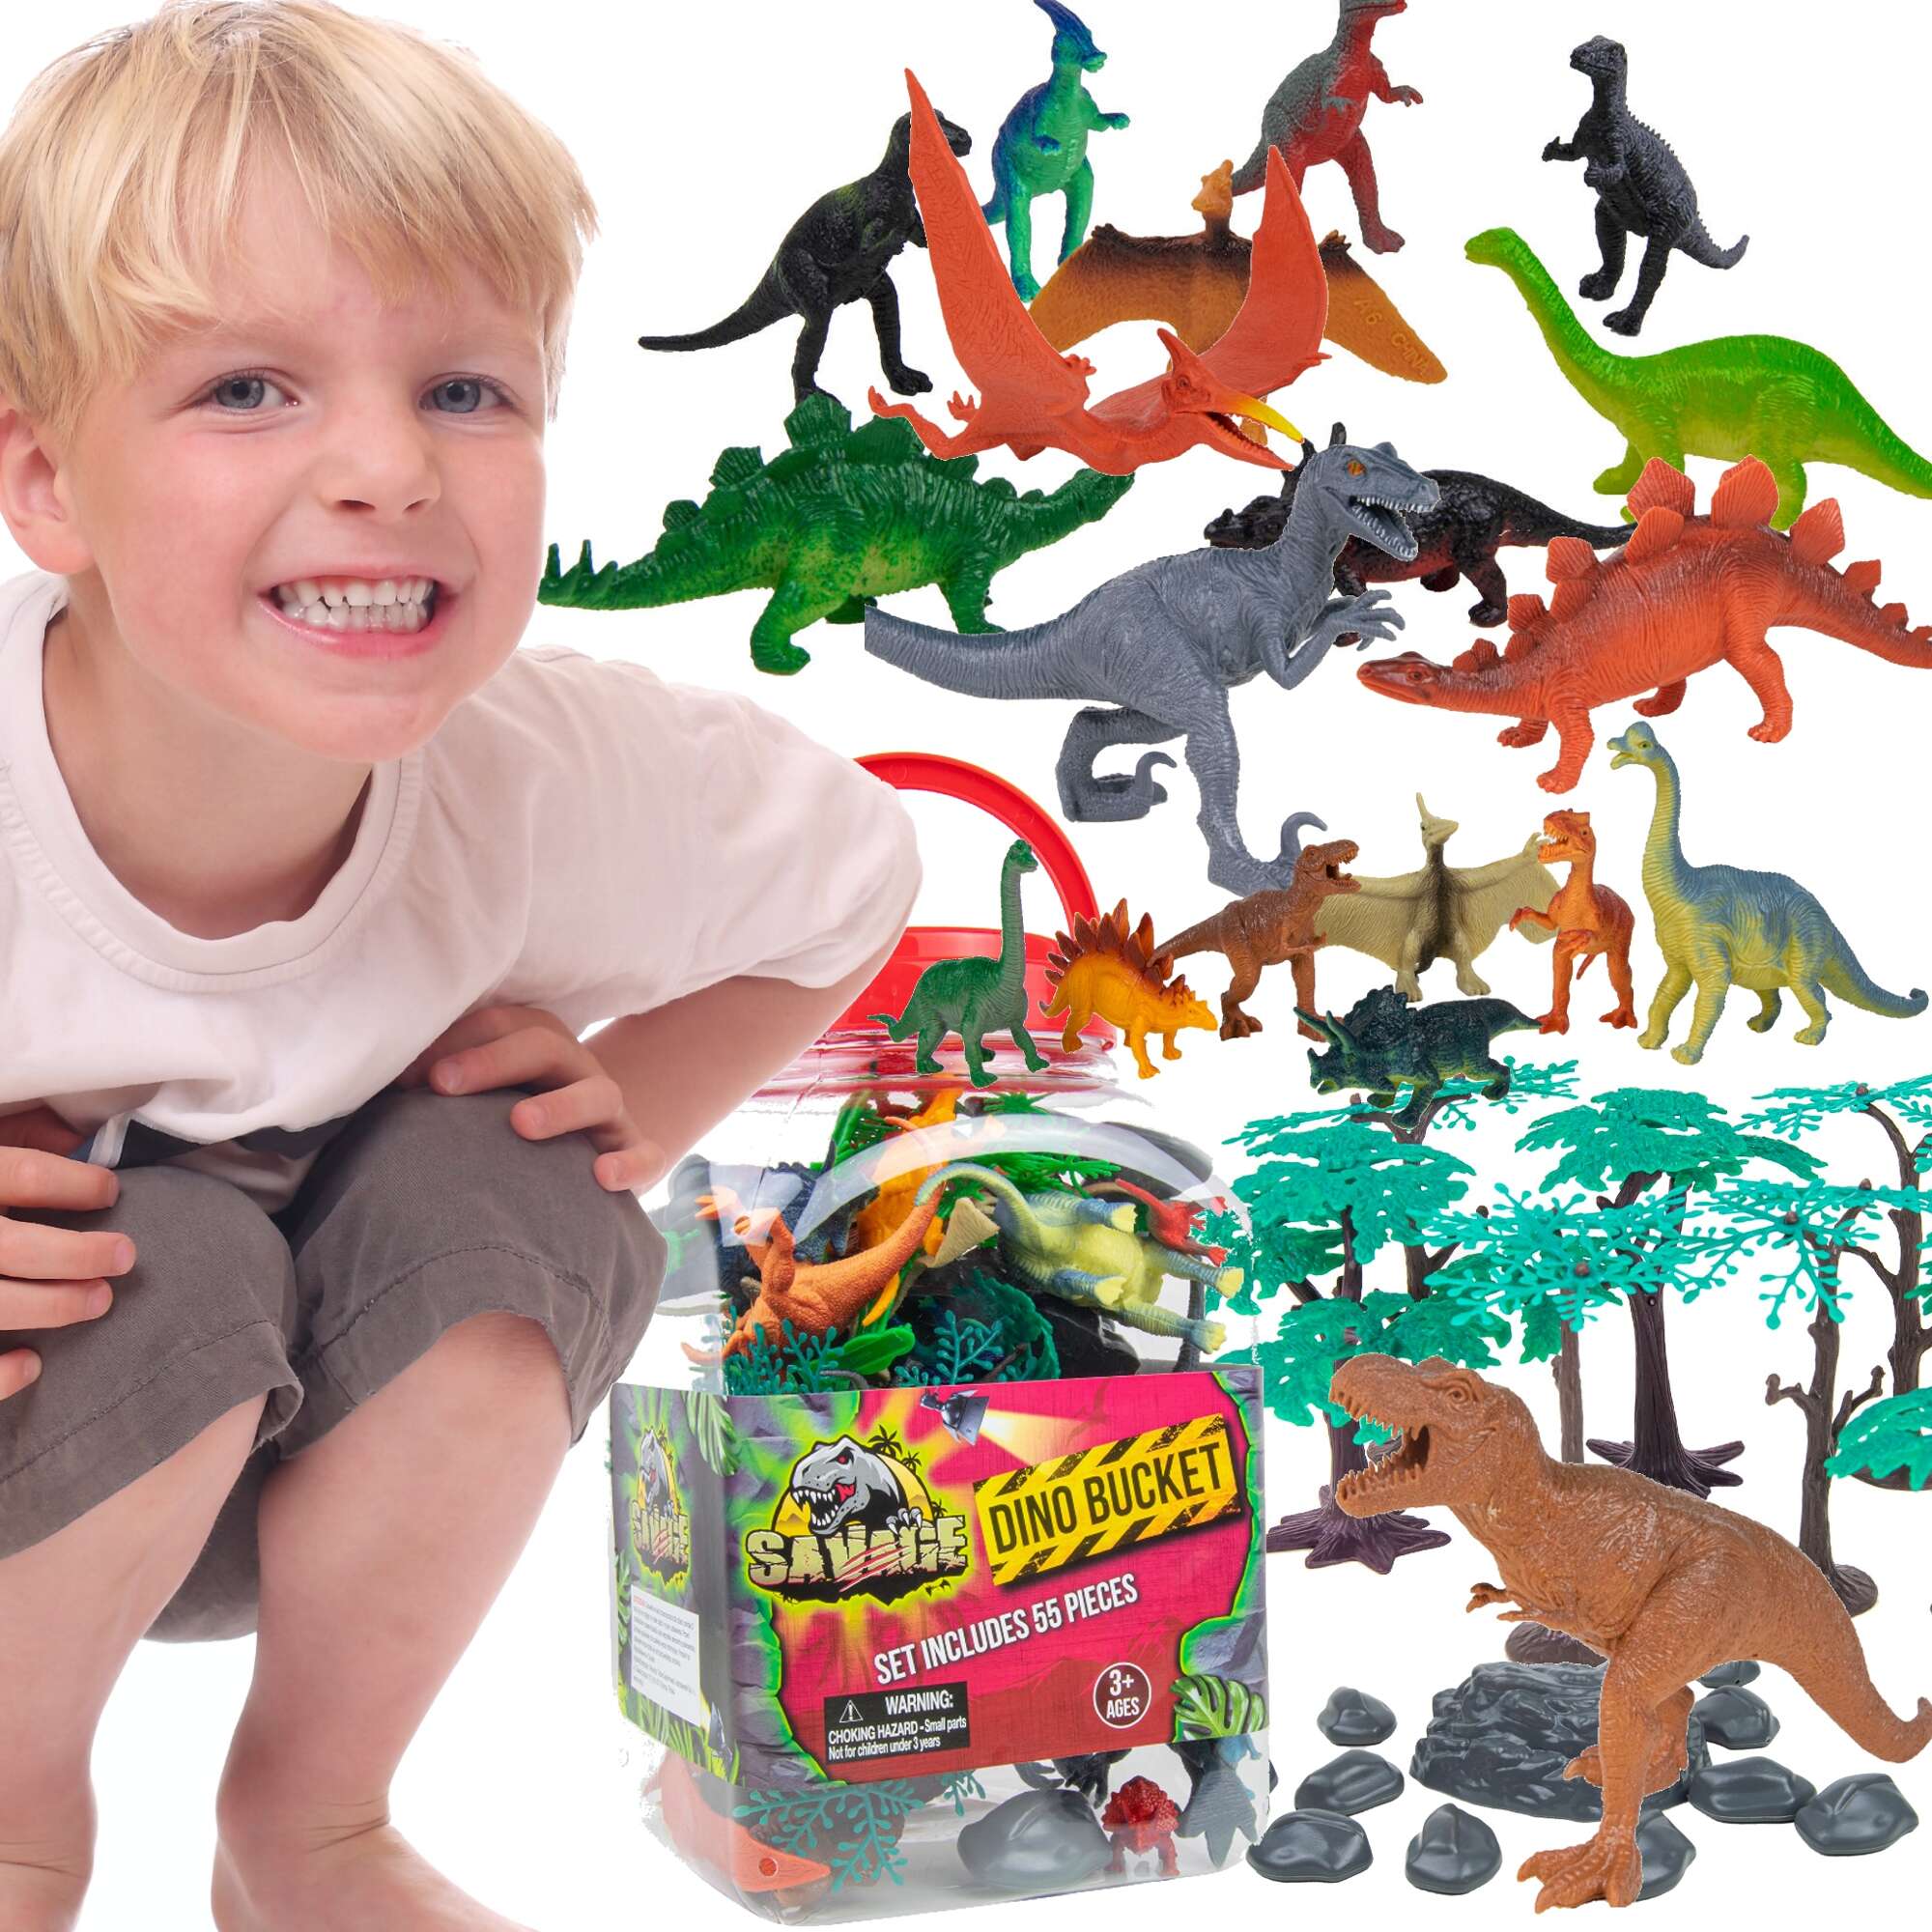 Park Jurajski duy zestaw dinozaurw, figurki w pojemniku, 55 elementw